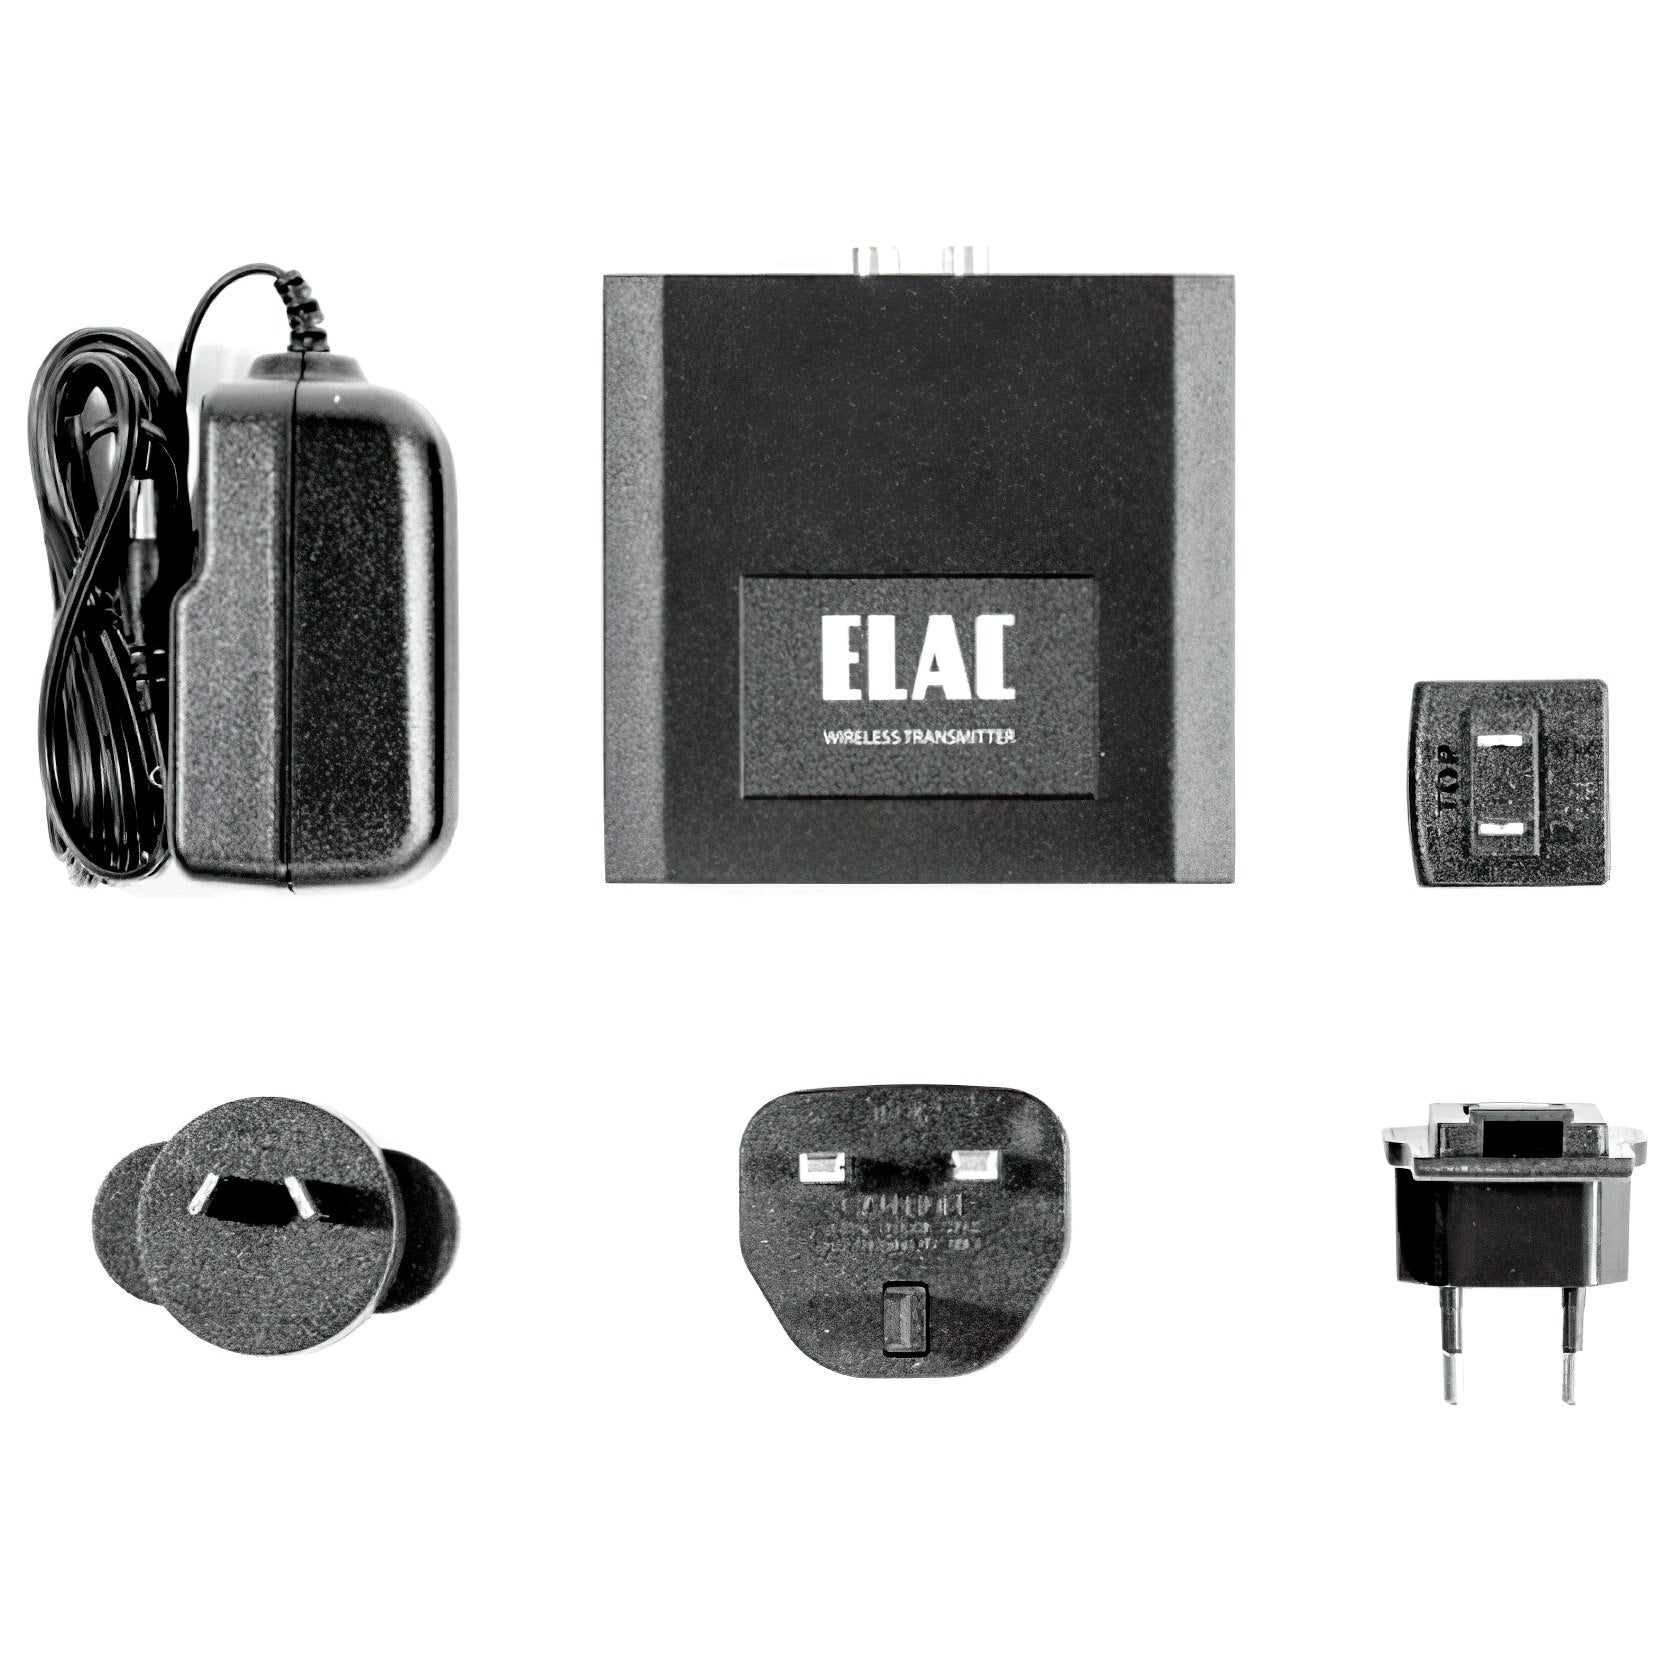 ELAC AirX2 Navis Wireless Transmitter